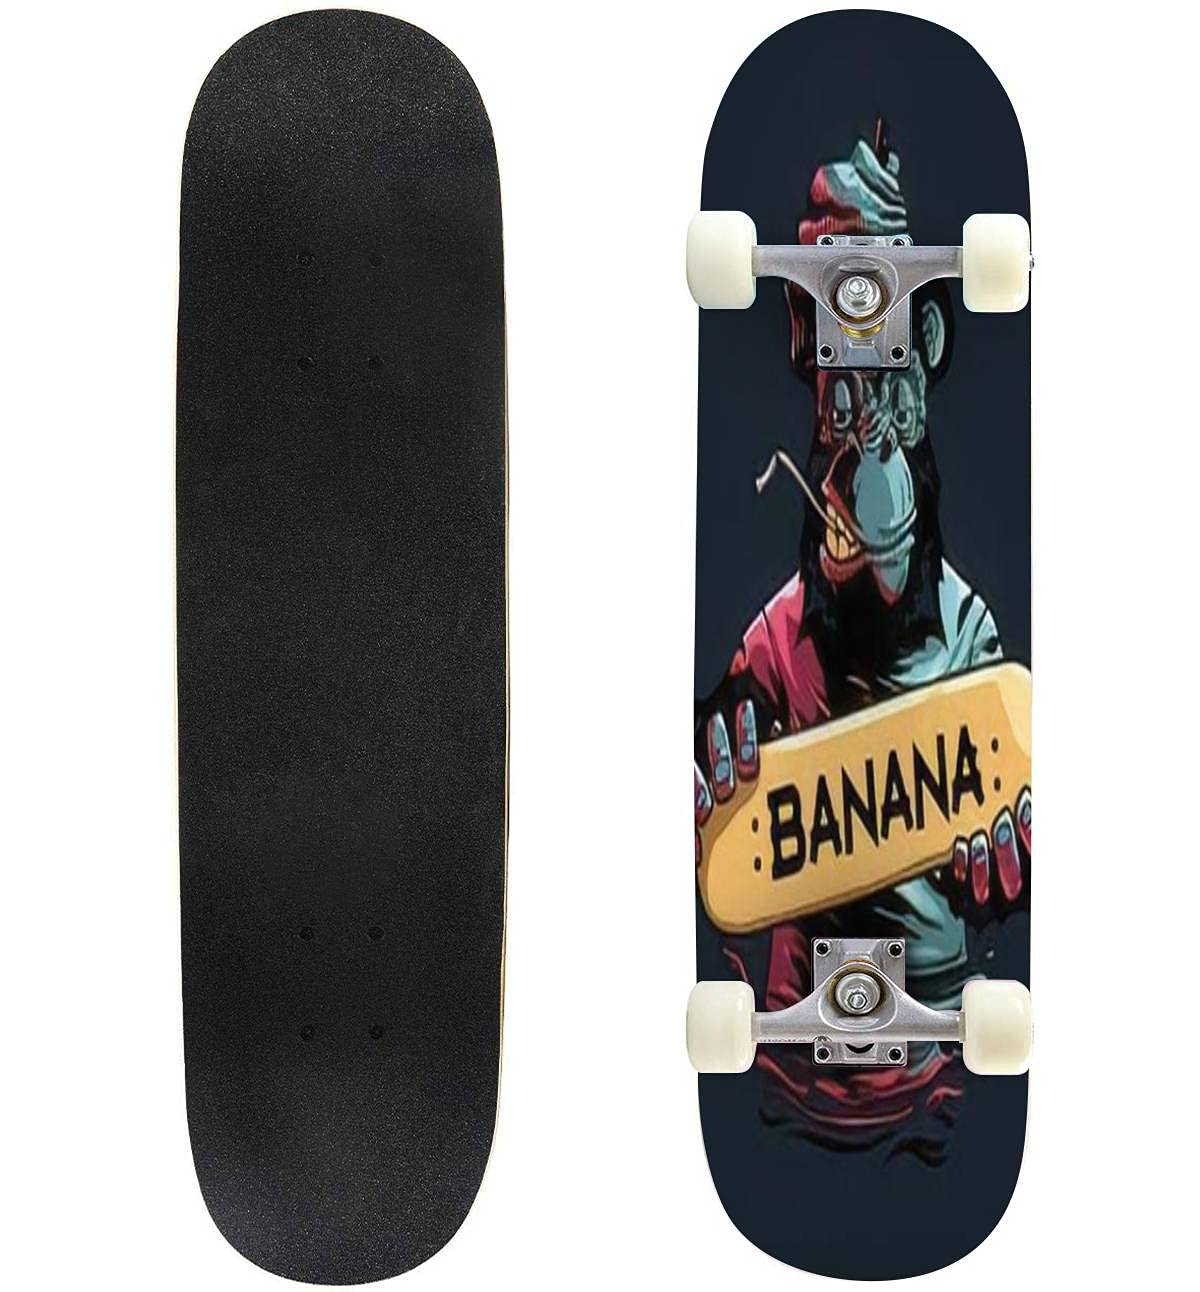 送料無料Skateboard Standard Double Kick Concave Longboard Banana Skateboard Fashion Professional Extreme Sports for Begin